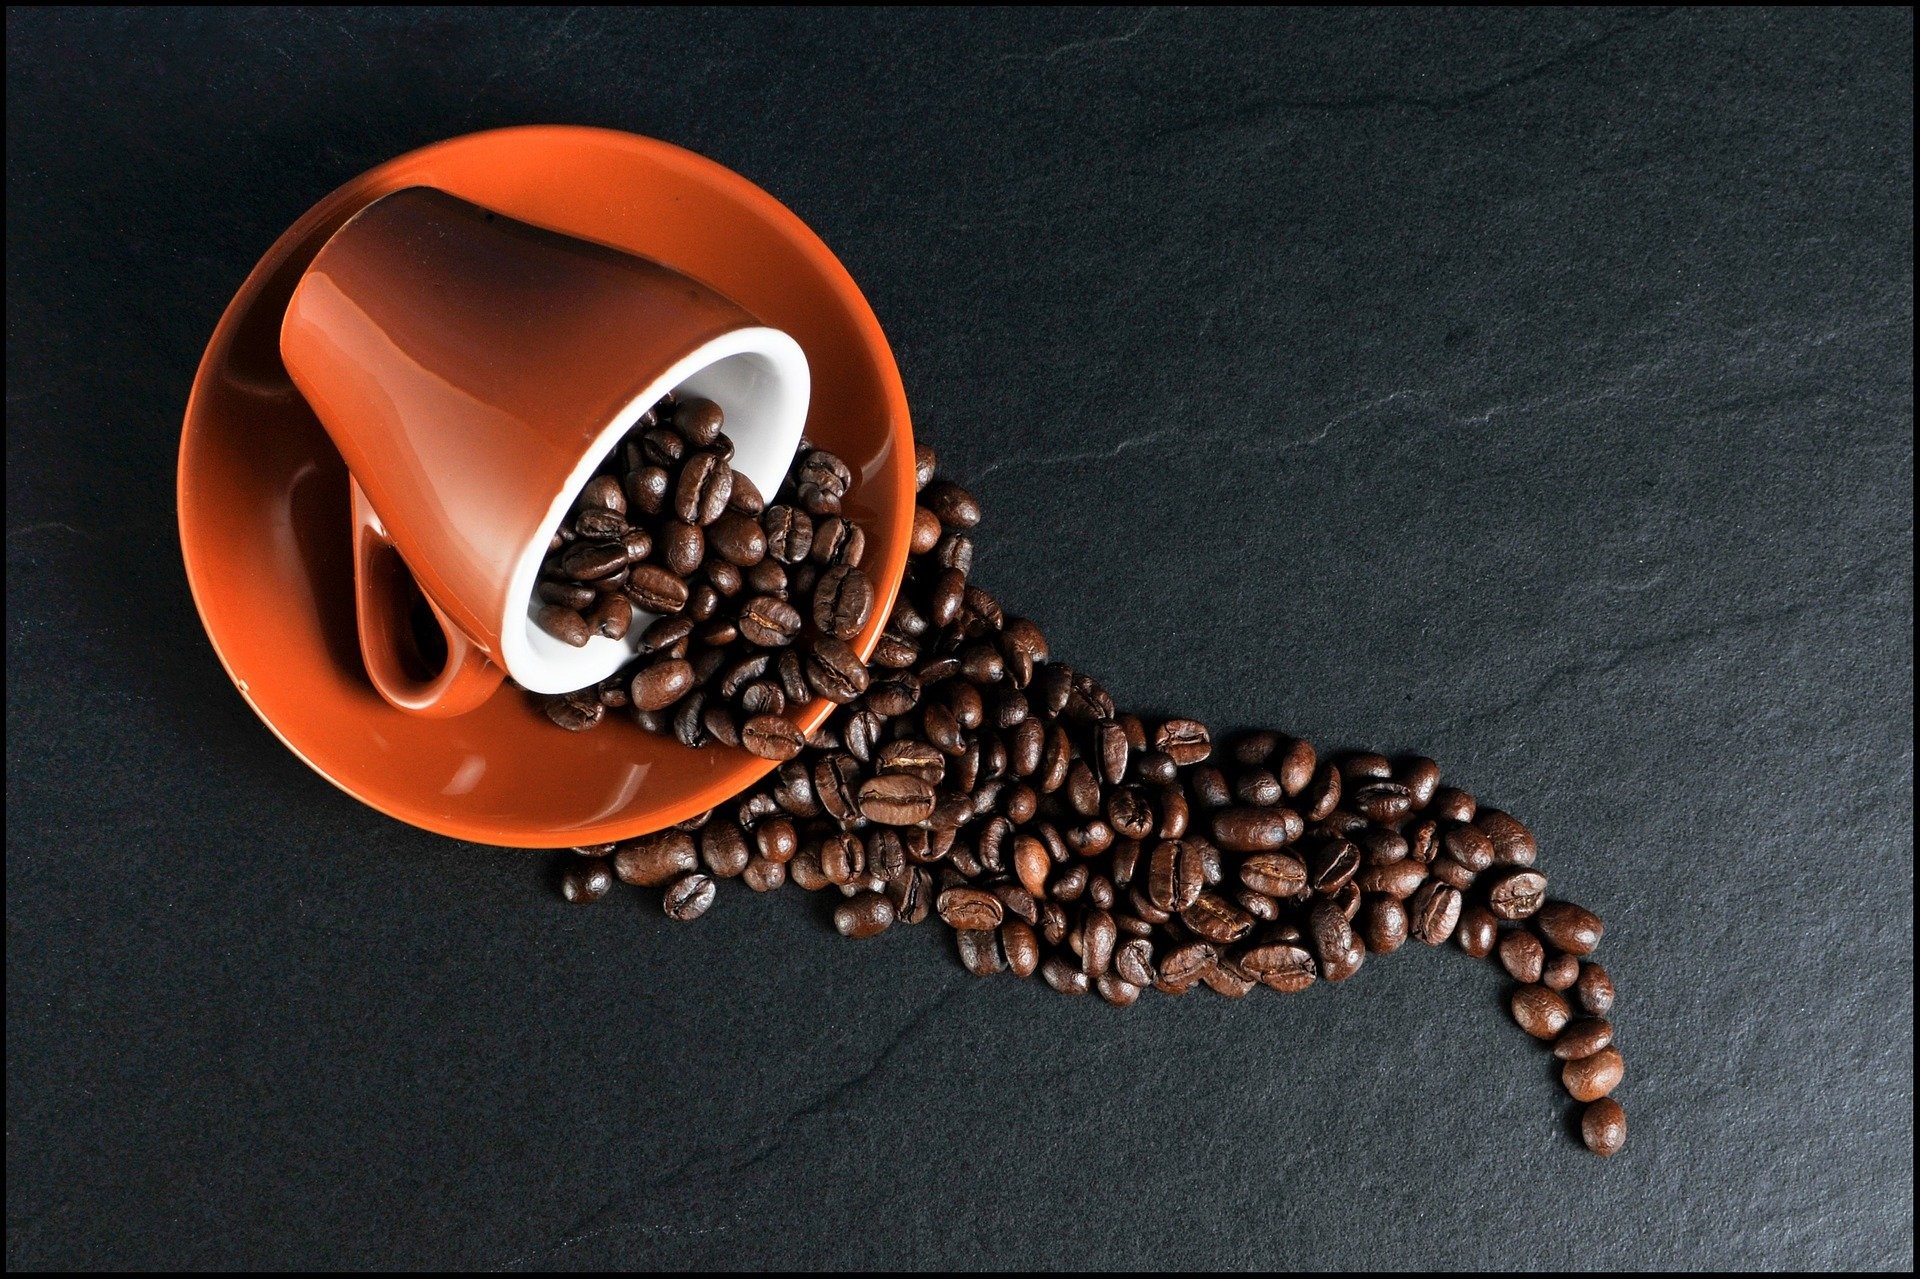 Med över 2,25 miljarder koppar kaffe som konsumeras över hela världen dagligen, är kaffe faktiskt den näst mest omsatta råvaran i världen, som faller lite efter råolja - och en av de äldsta också. Kaffe är kanske en av de mest intressanta, men ändå volatila råvarorna att handla. I denna text tittar vi på fyra saker att tänka på innan du handlar kaffe